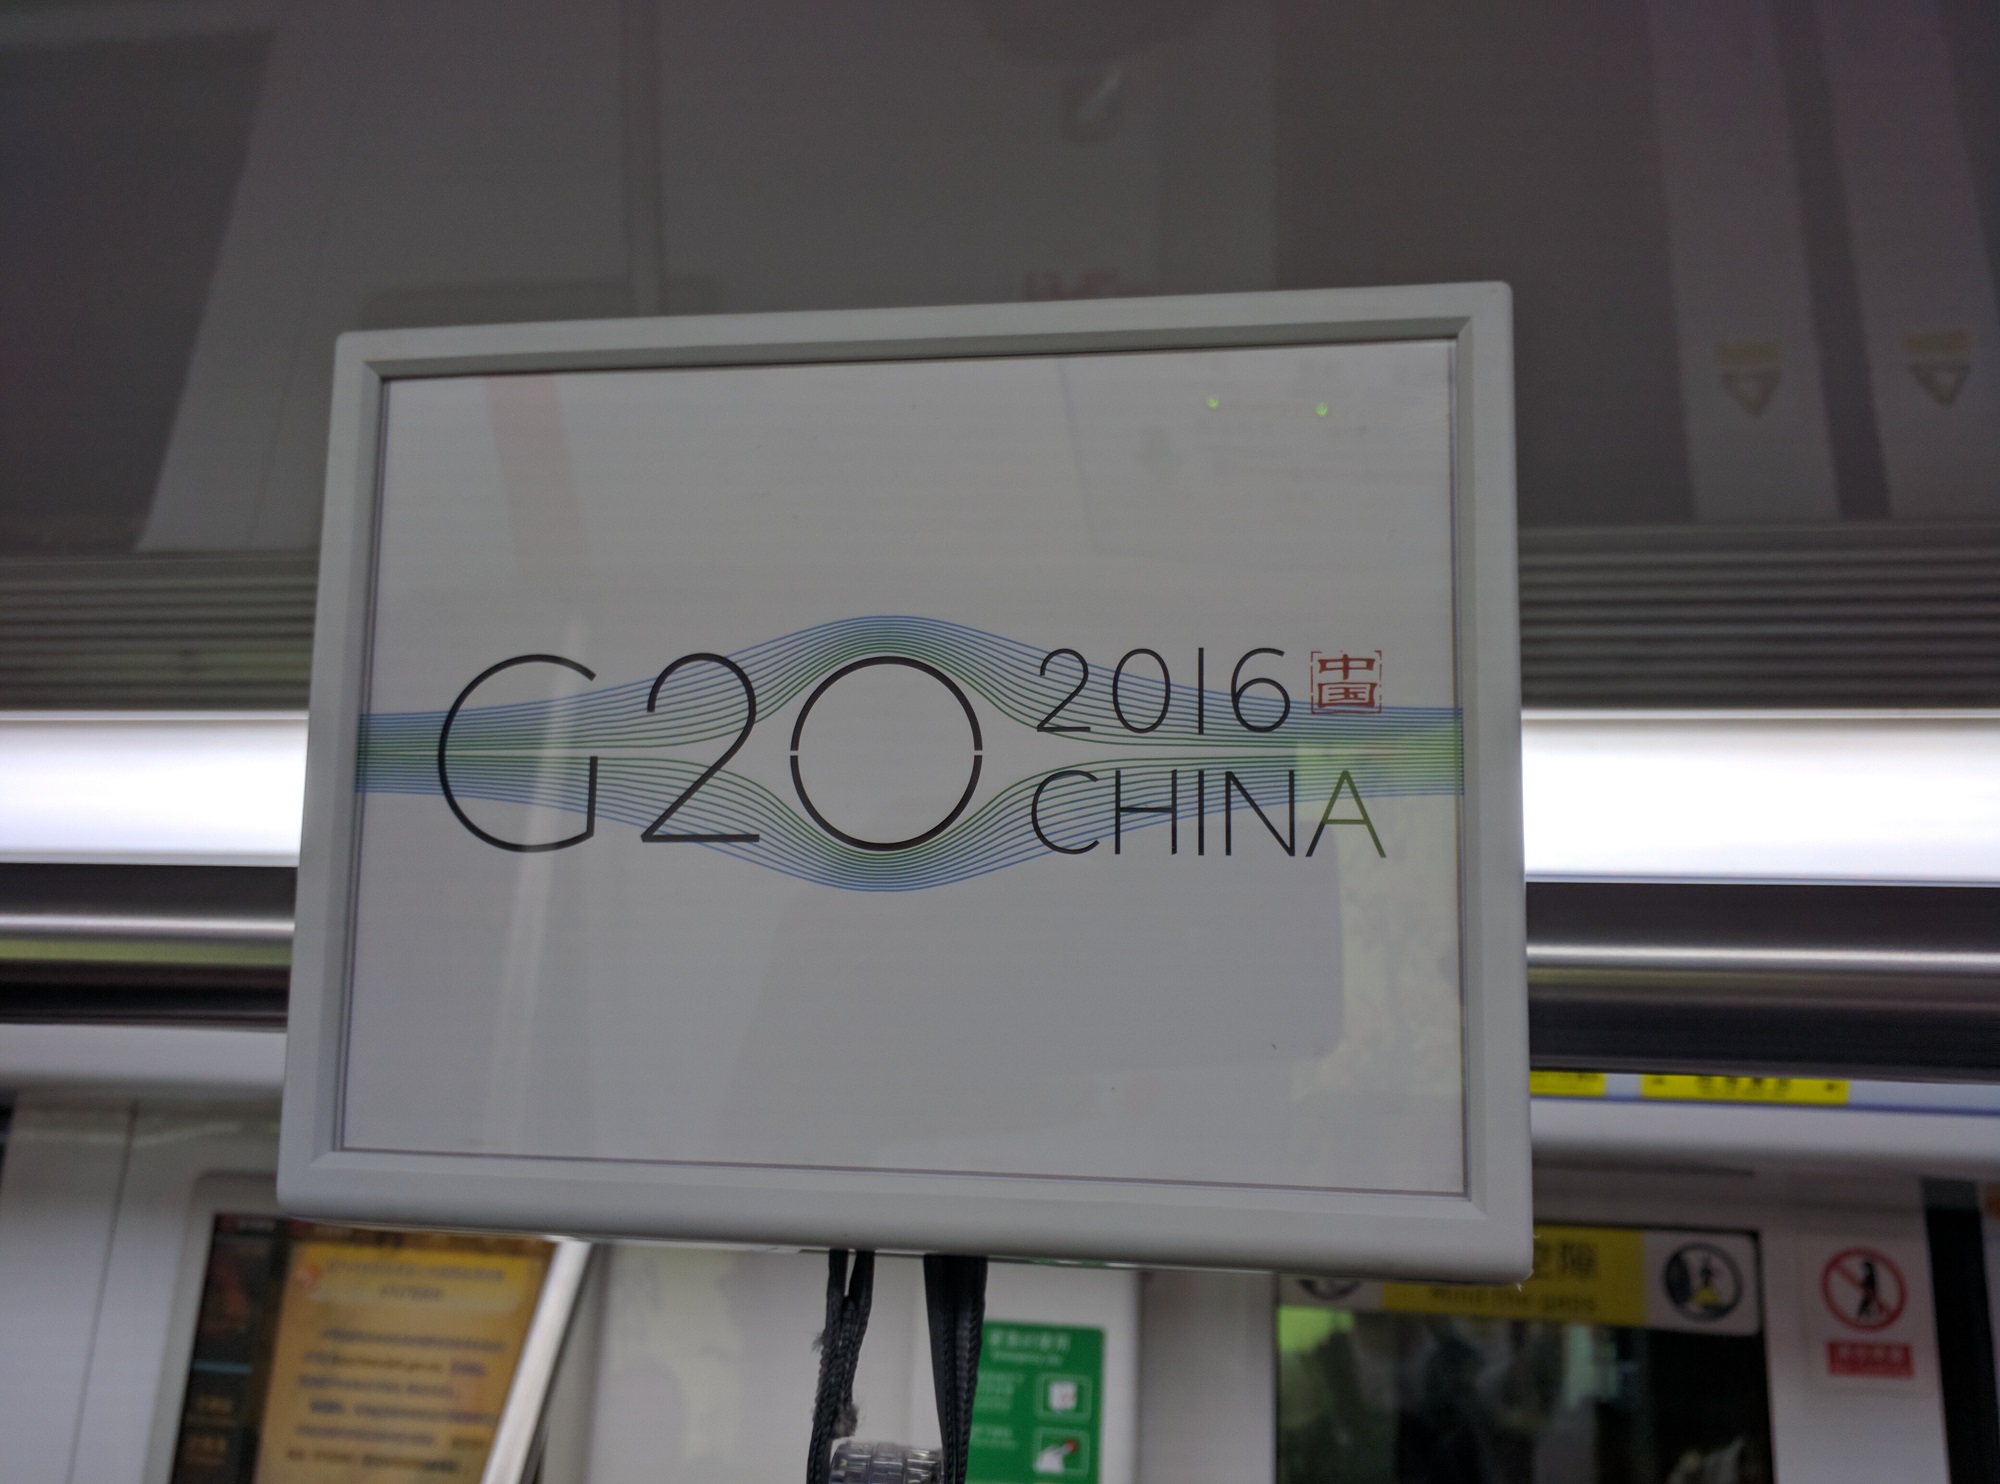 Und G20 Werbung in der U-Bahn.